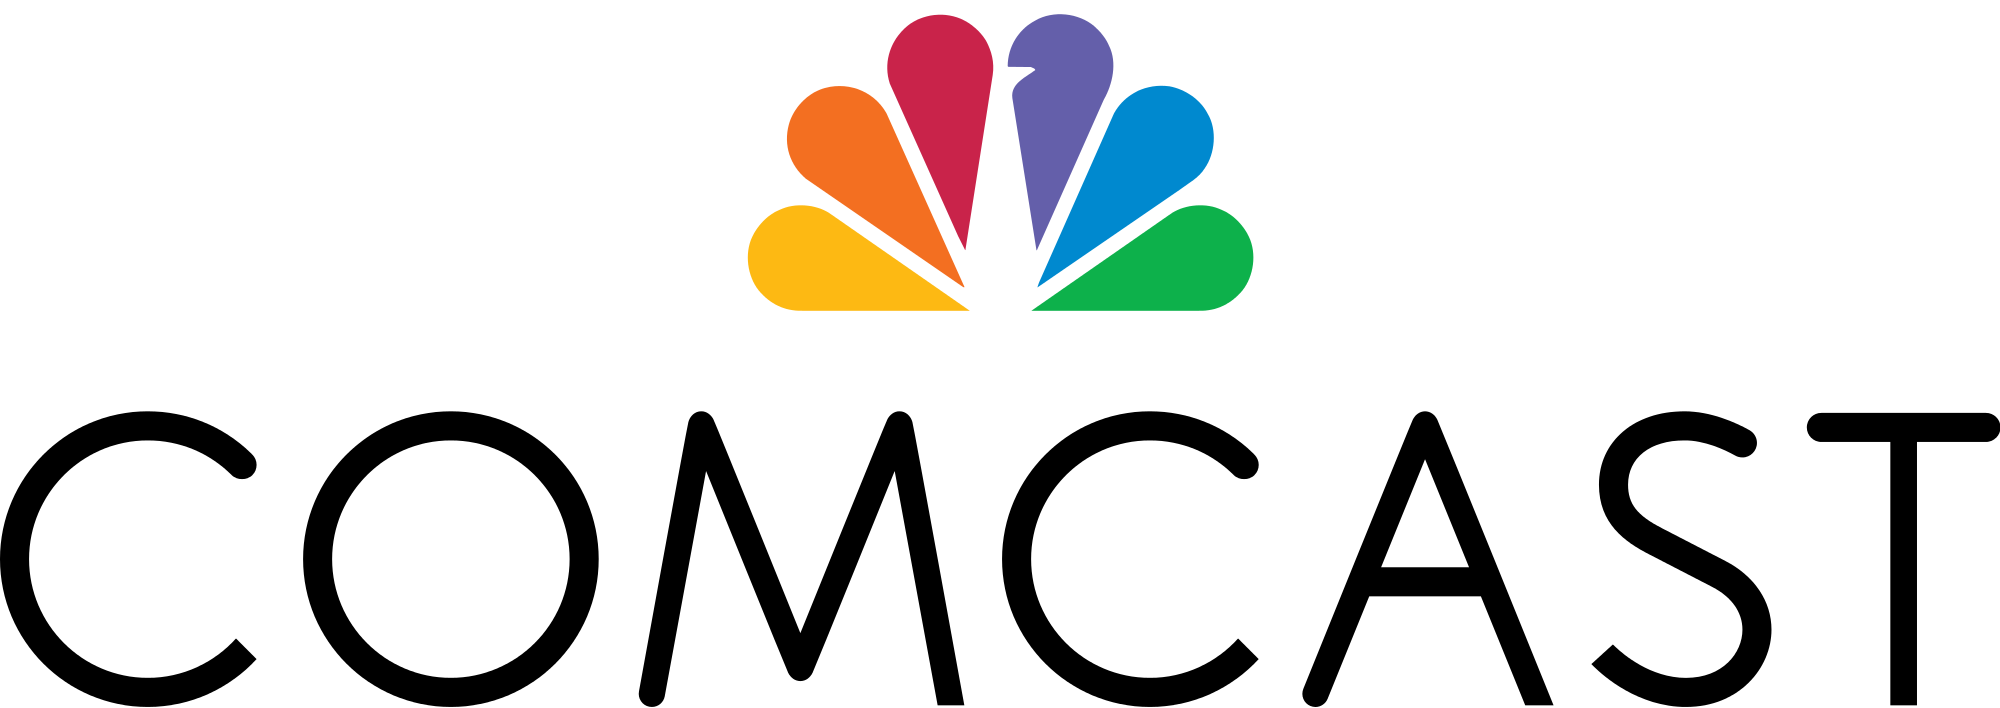 Comcast_Logo.svg.png